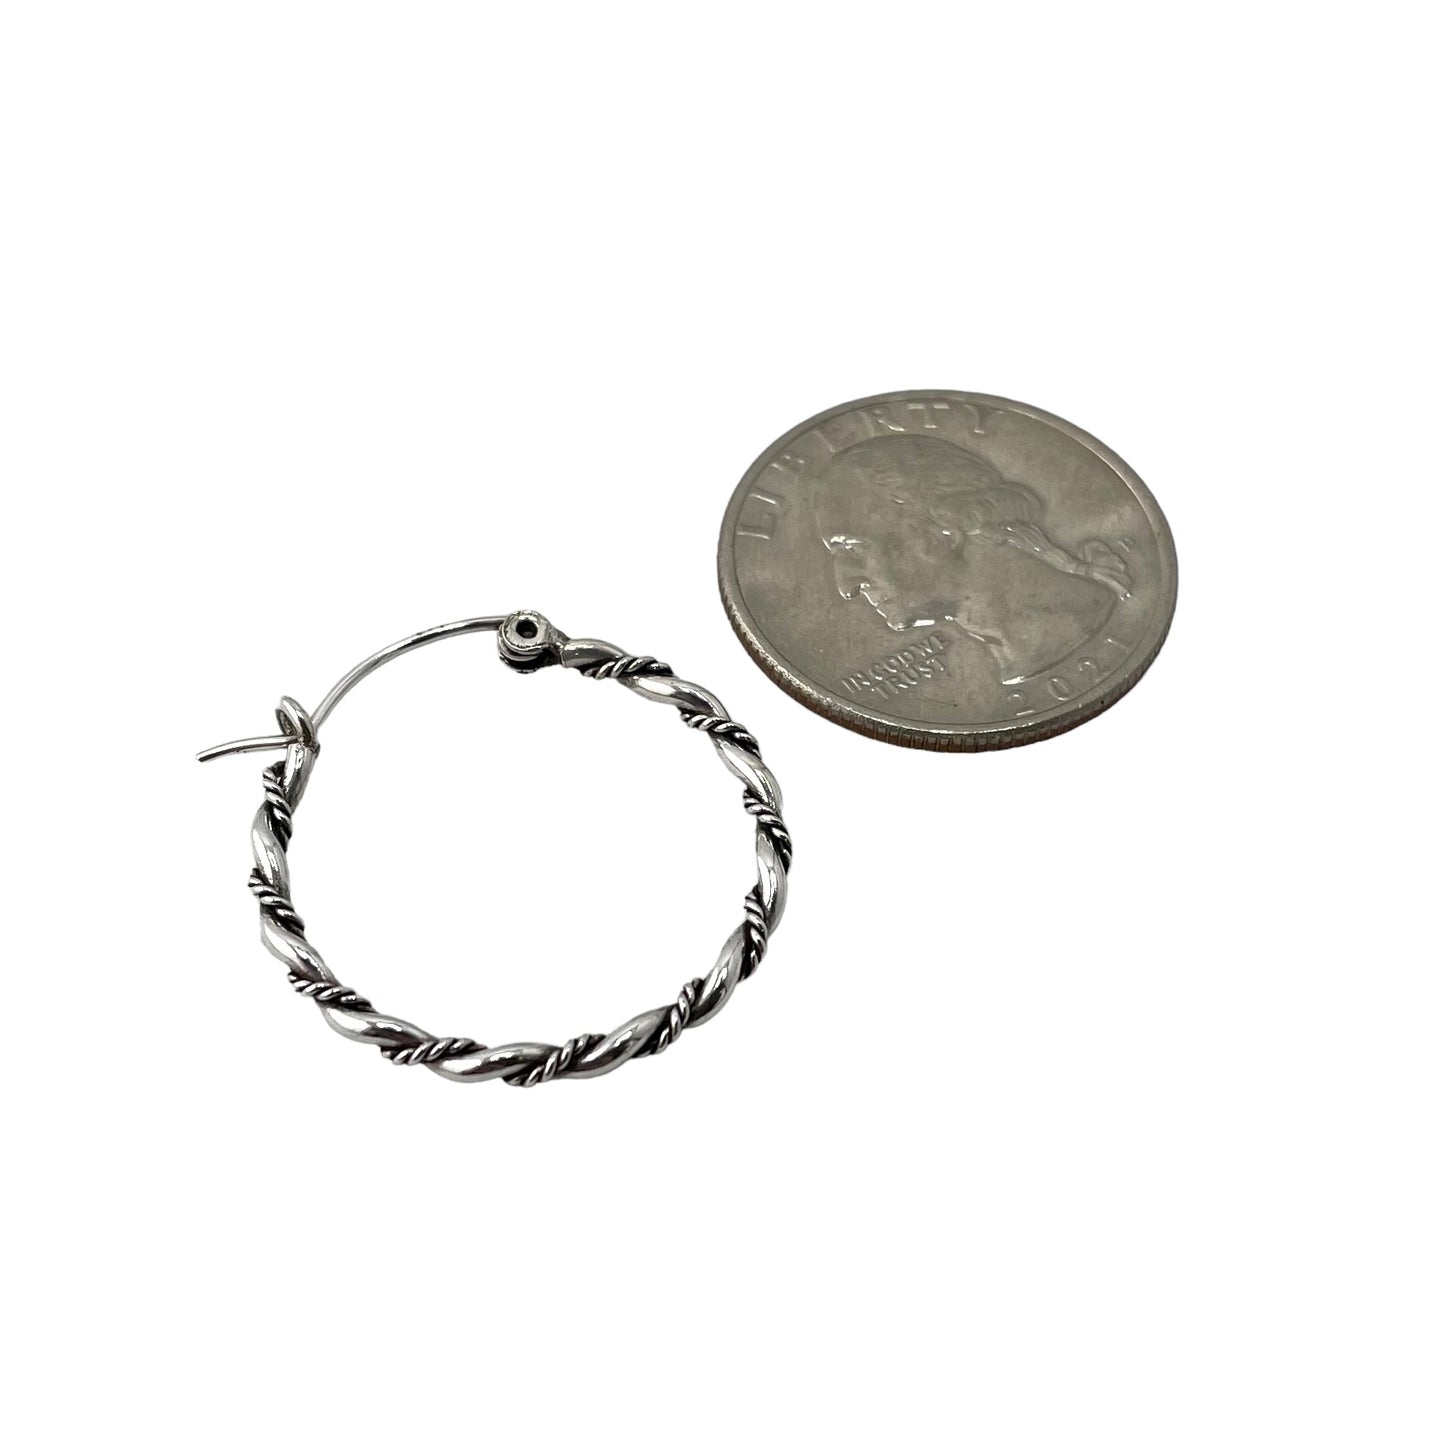 Rope Twist 25mm Hinged Hoop Earrings Sterling Silver